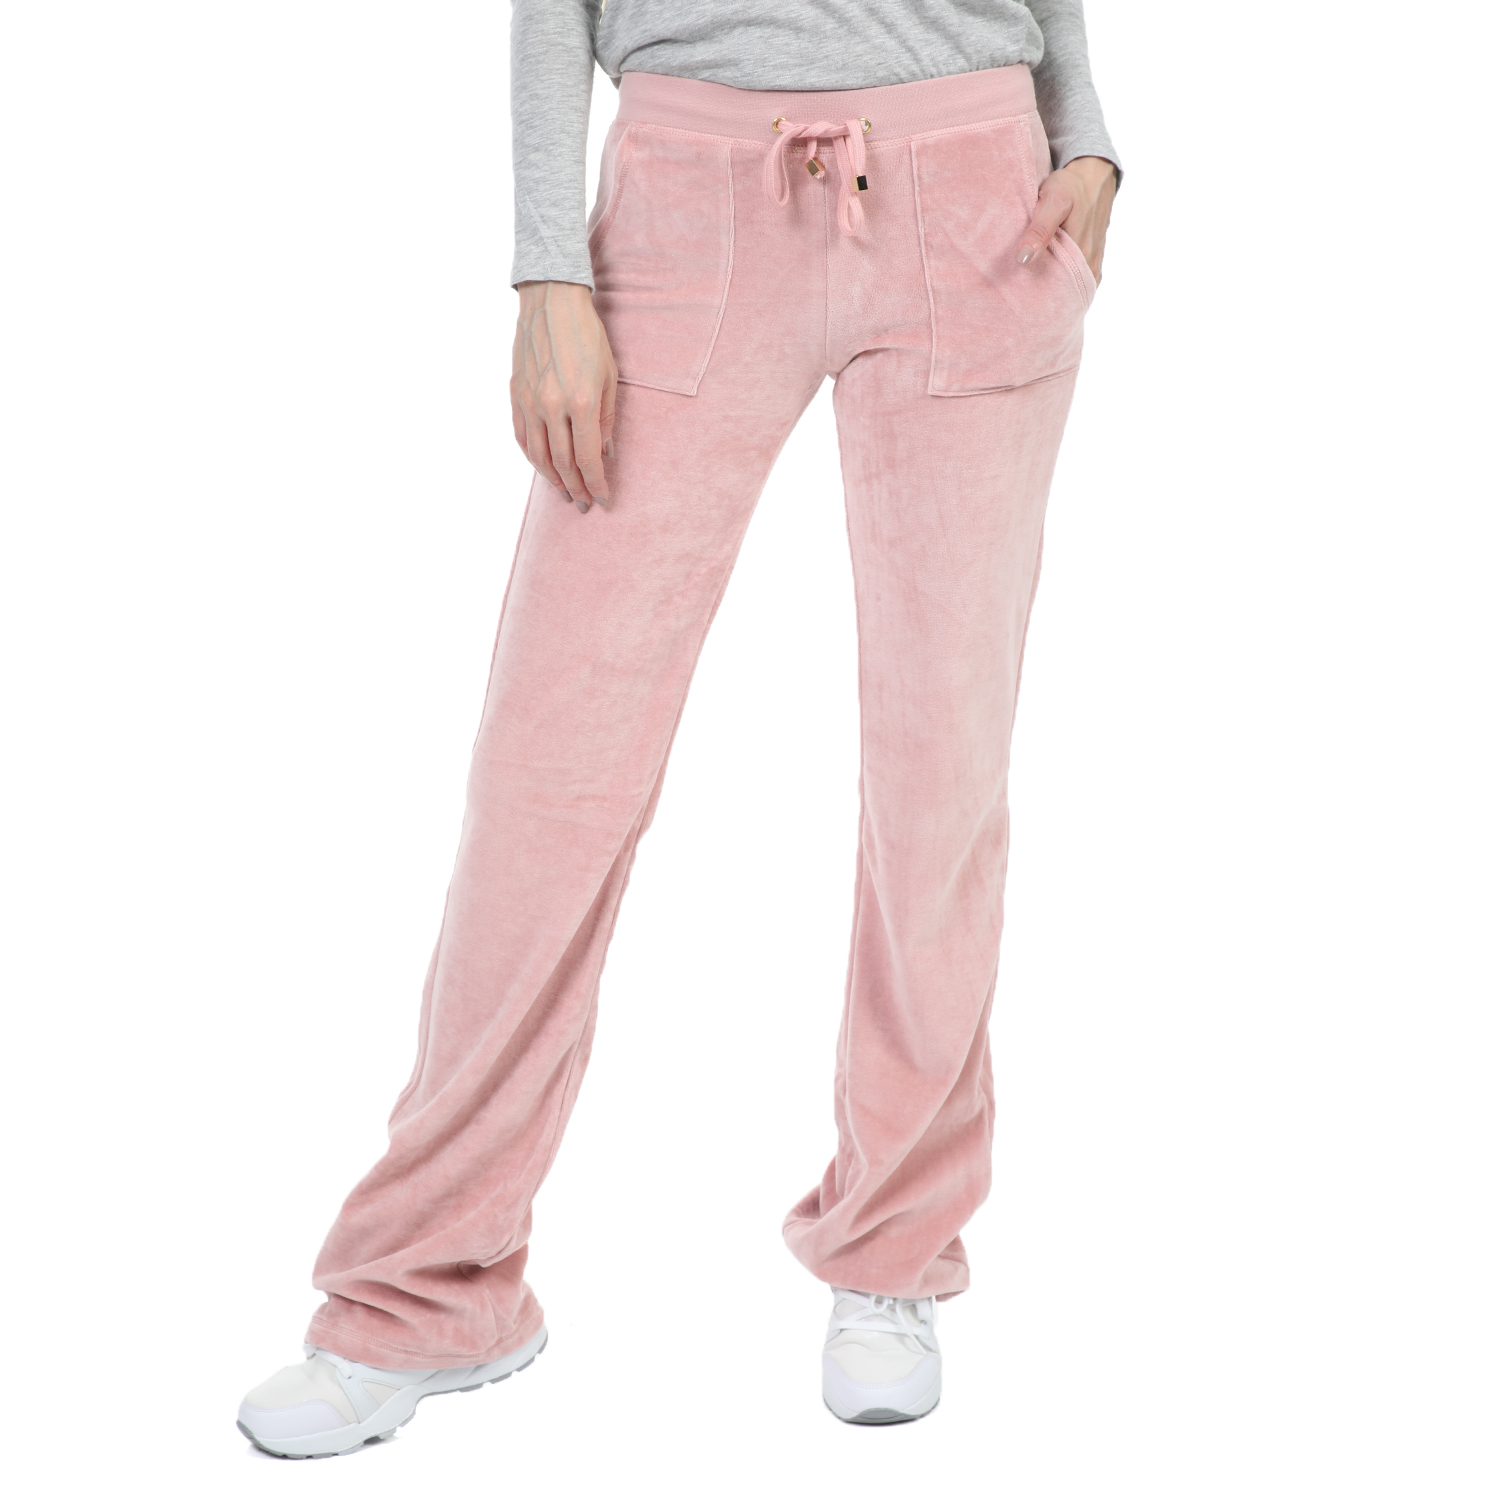 Γυναικεία/Ρούχα/Παντελόνια/Φόρμες FOUR ANGELS - Γυναικείο παντελόνι φόρμας FOUR ANGELS CLASSIC ροζ